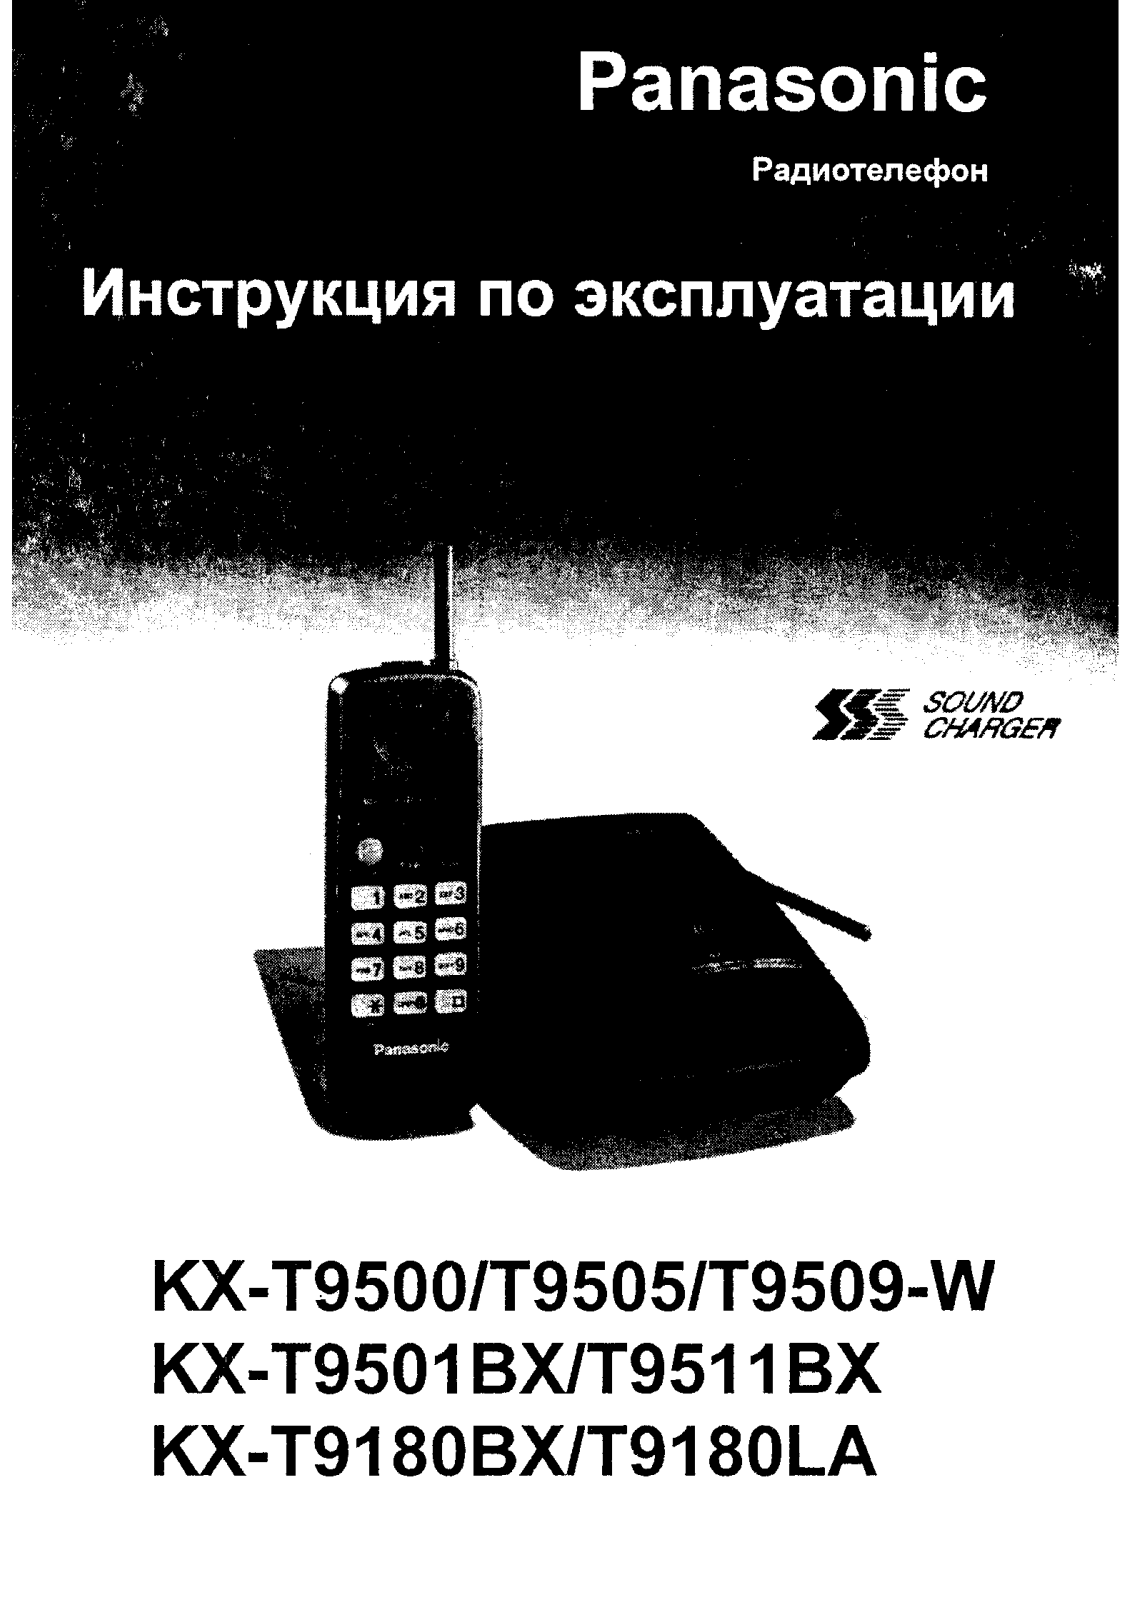 Panasonic KX-T9500, KX-T9511BX, KX-T9501BX, KX-T9509-W User Manual